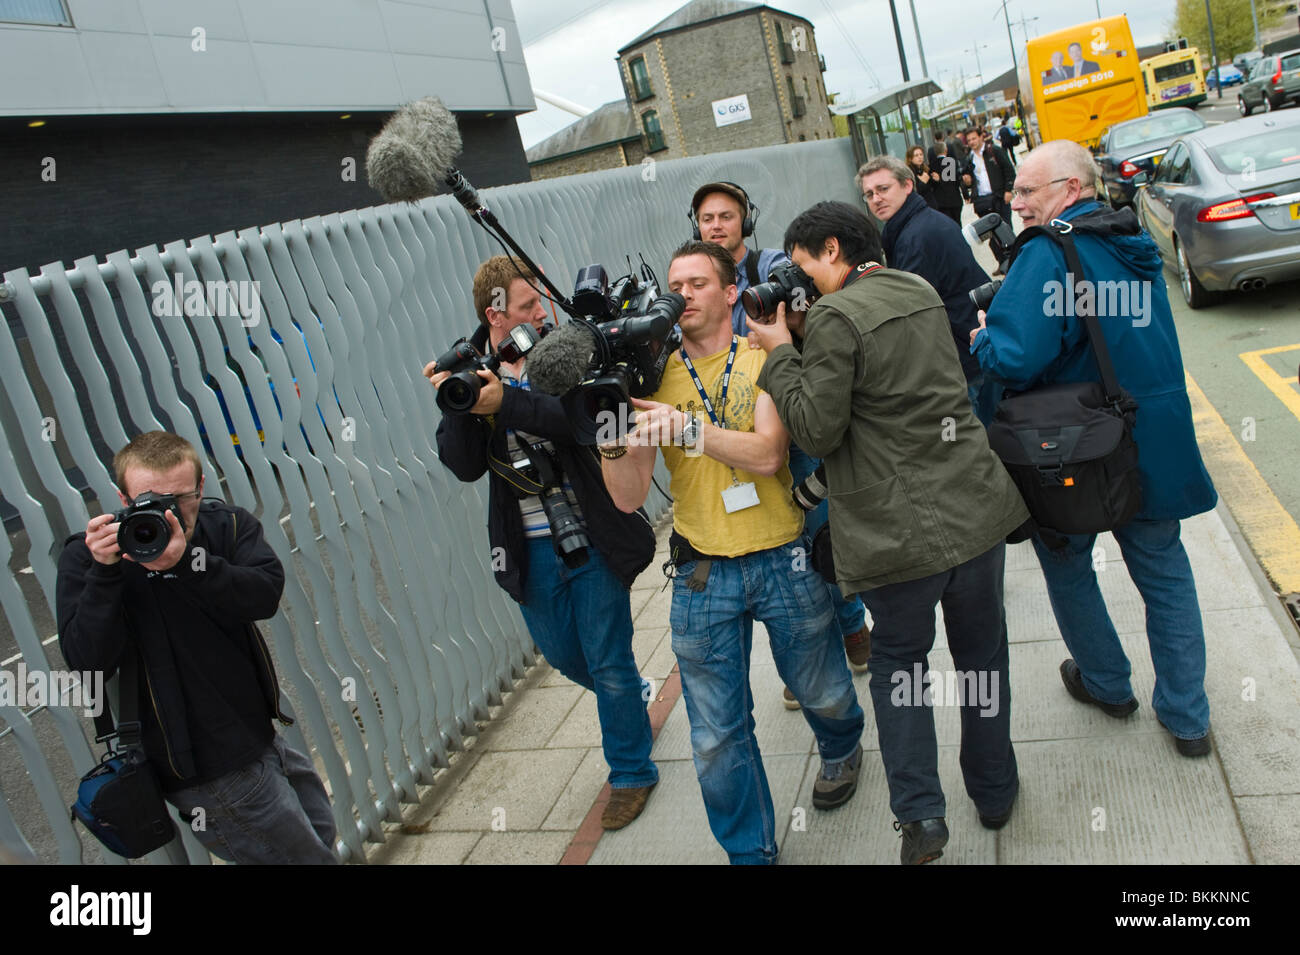 Los camarógrafos de medios fotografía liberal demócrata Nick Clegg en una campaña electoral visita a Newport South Wales UK Foto de stock